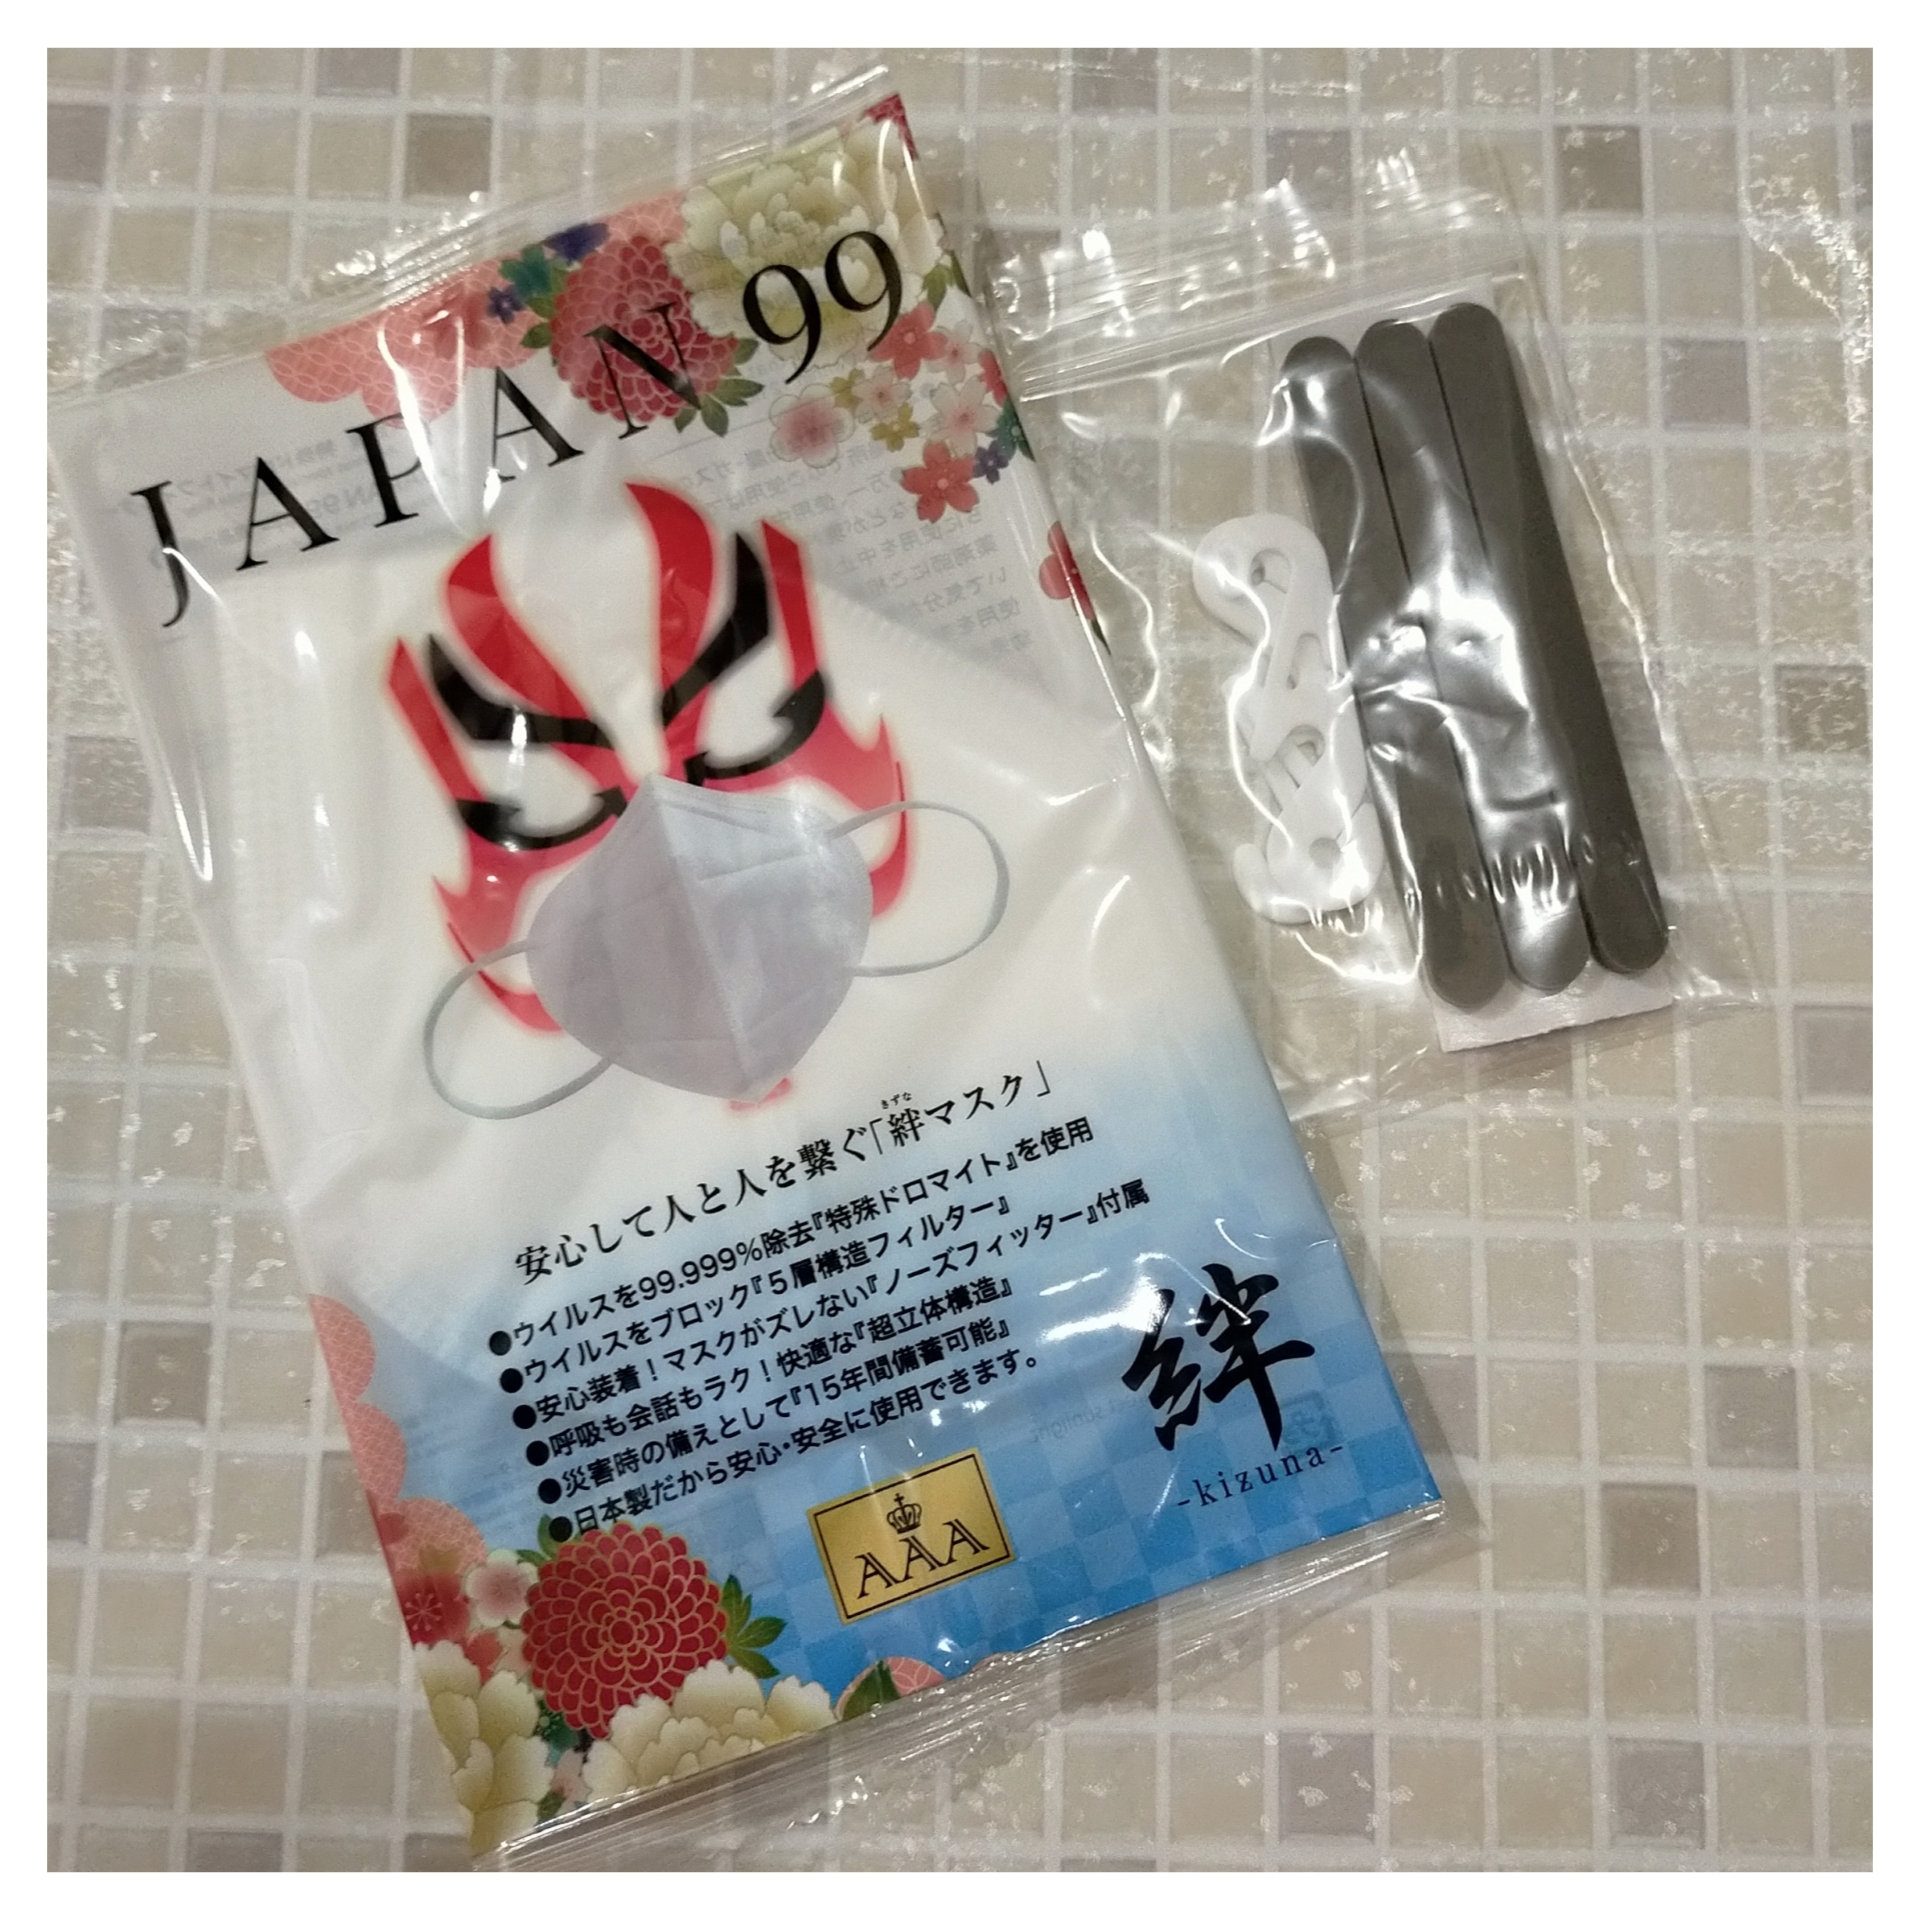 AAAブロス(トリプルエーブロス) JAPAN99-絆-マスクの良い点・メリットに関するみこさんの口コミ画像1